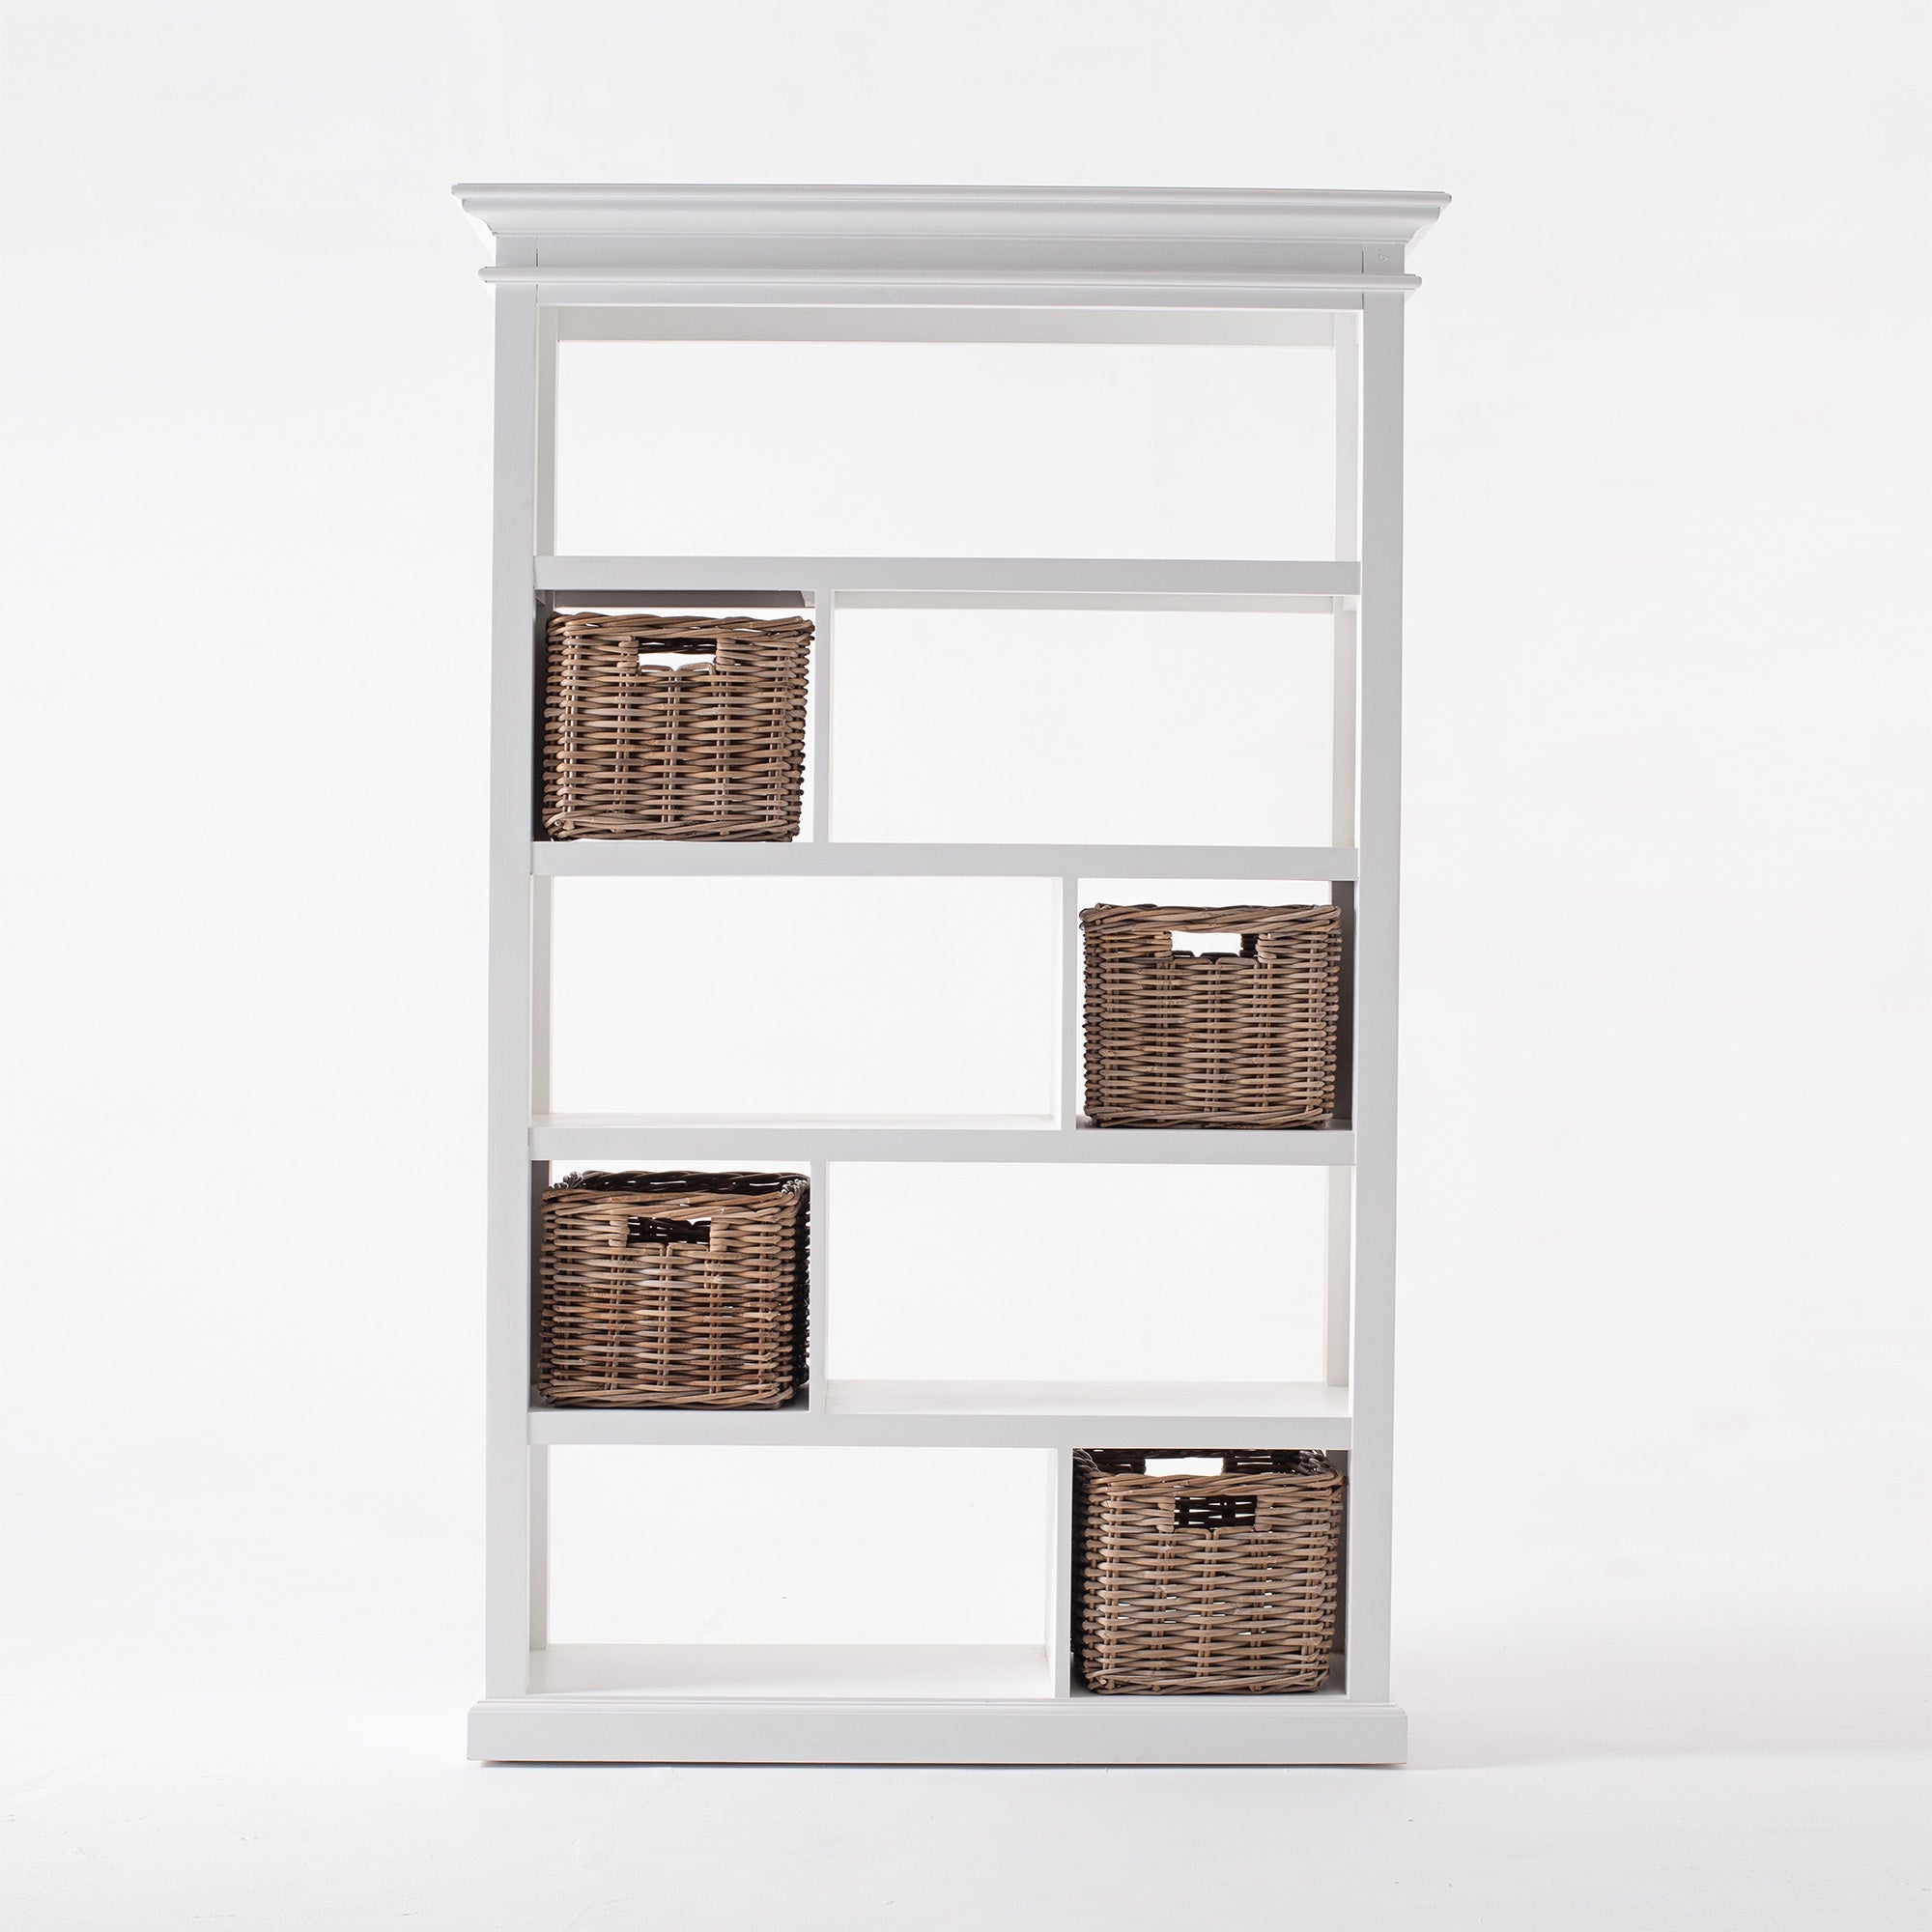 Halifax Coastal White Bookcase with Basket Set